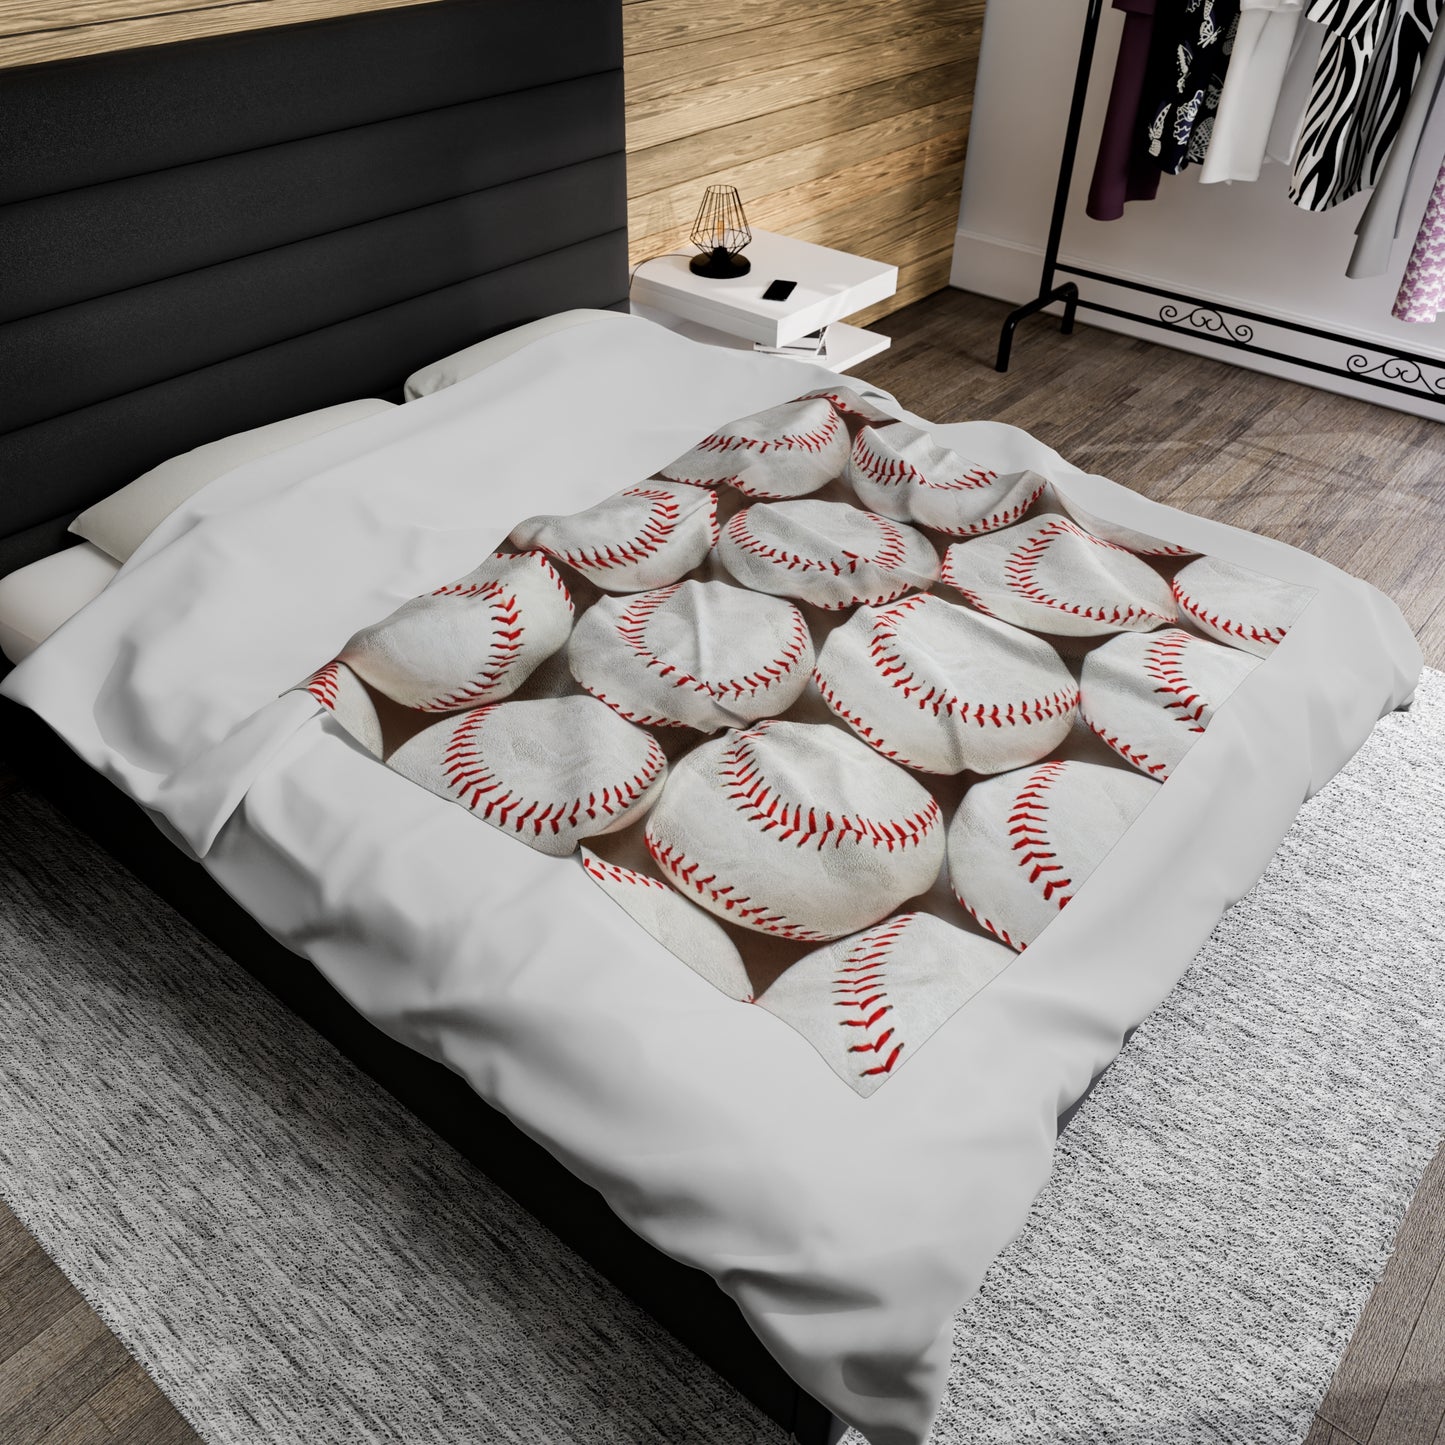 Baseball Plush Blanket